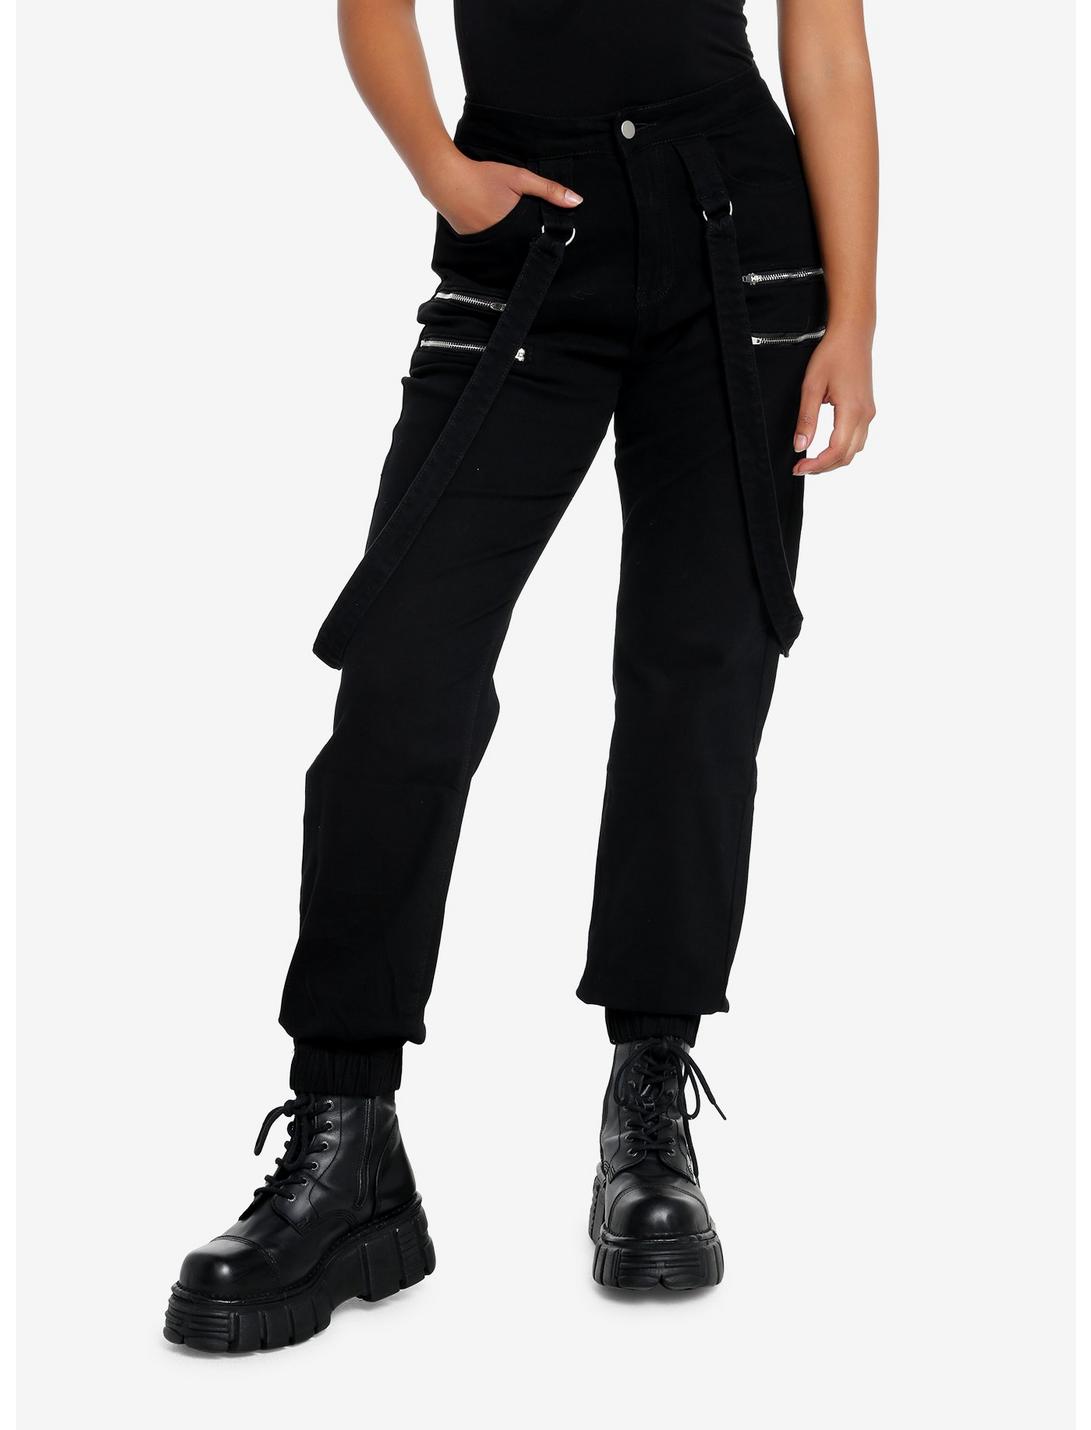 Black Denim Zipper Jogger Pants, BLACK, hi-res